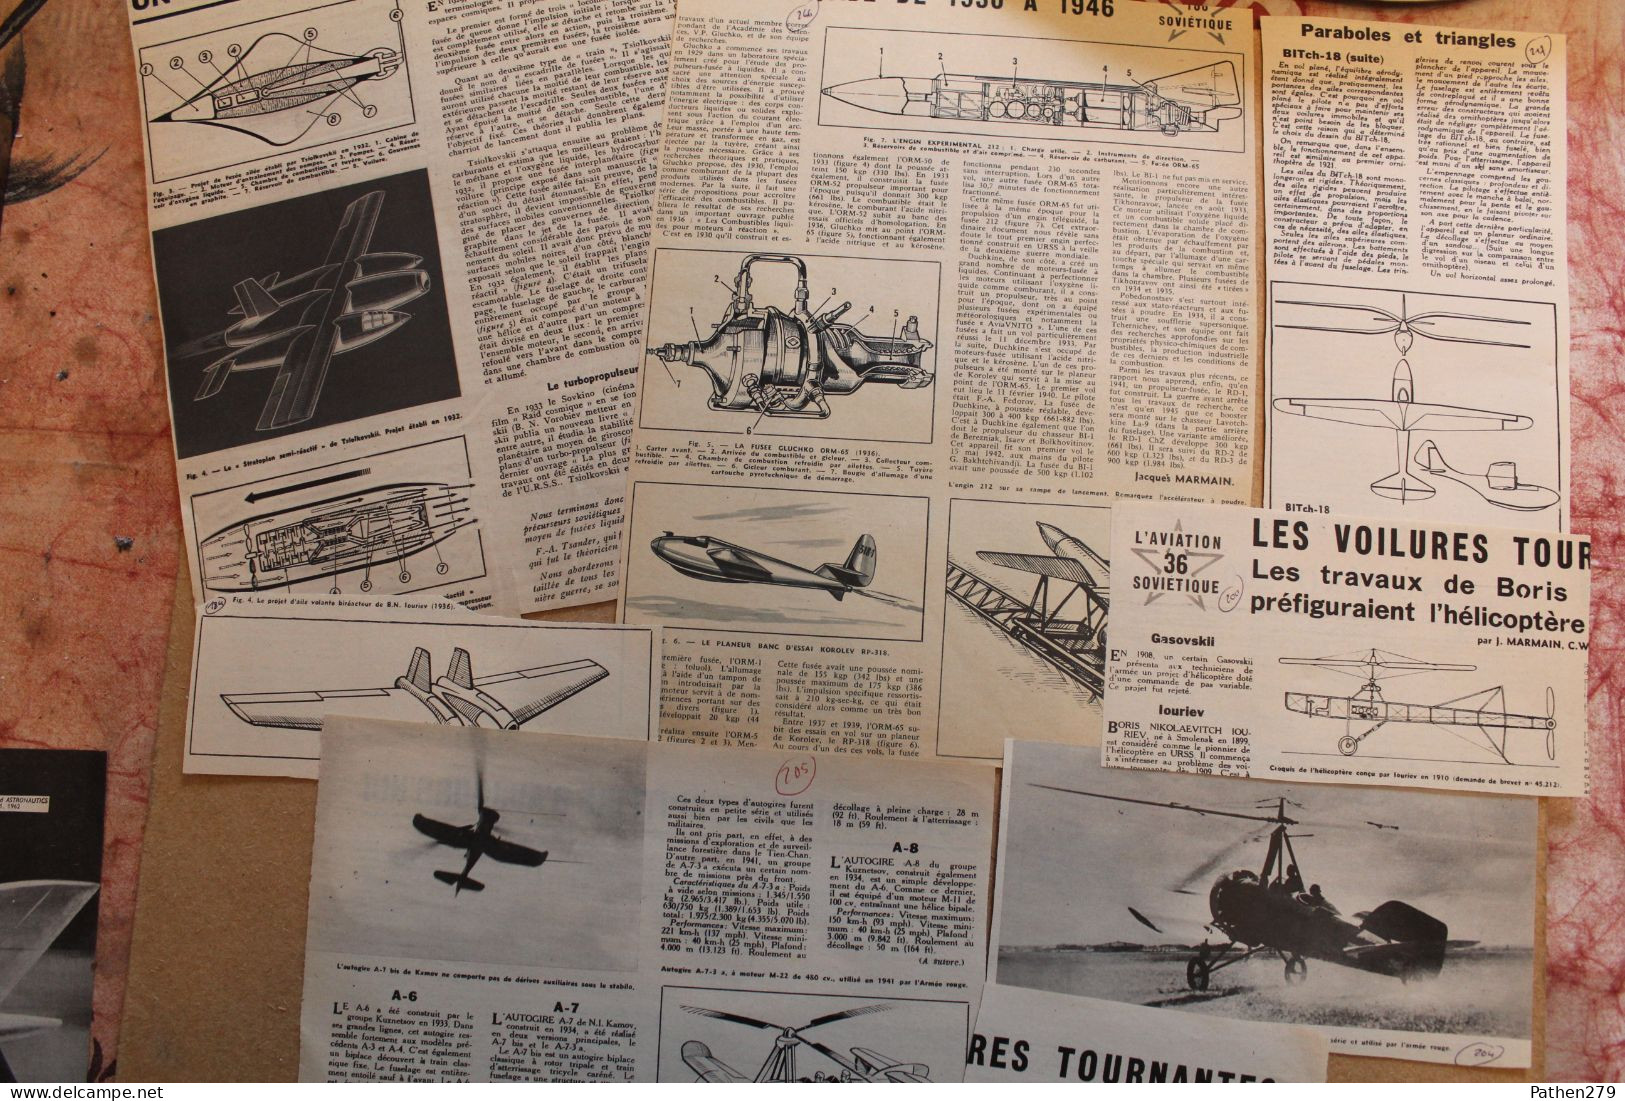 Lot de 279g d'anciennes coupures de presse et photos de divers aéronefs soviétiques et informations diverses